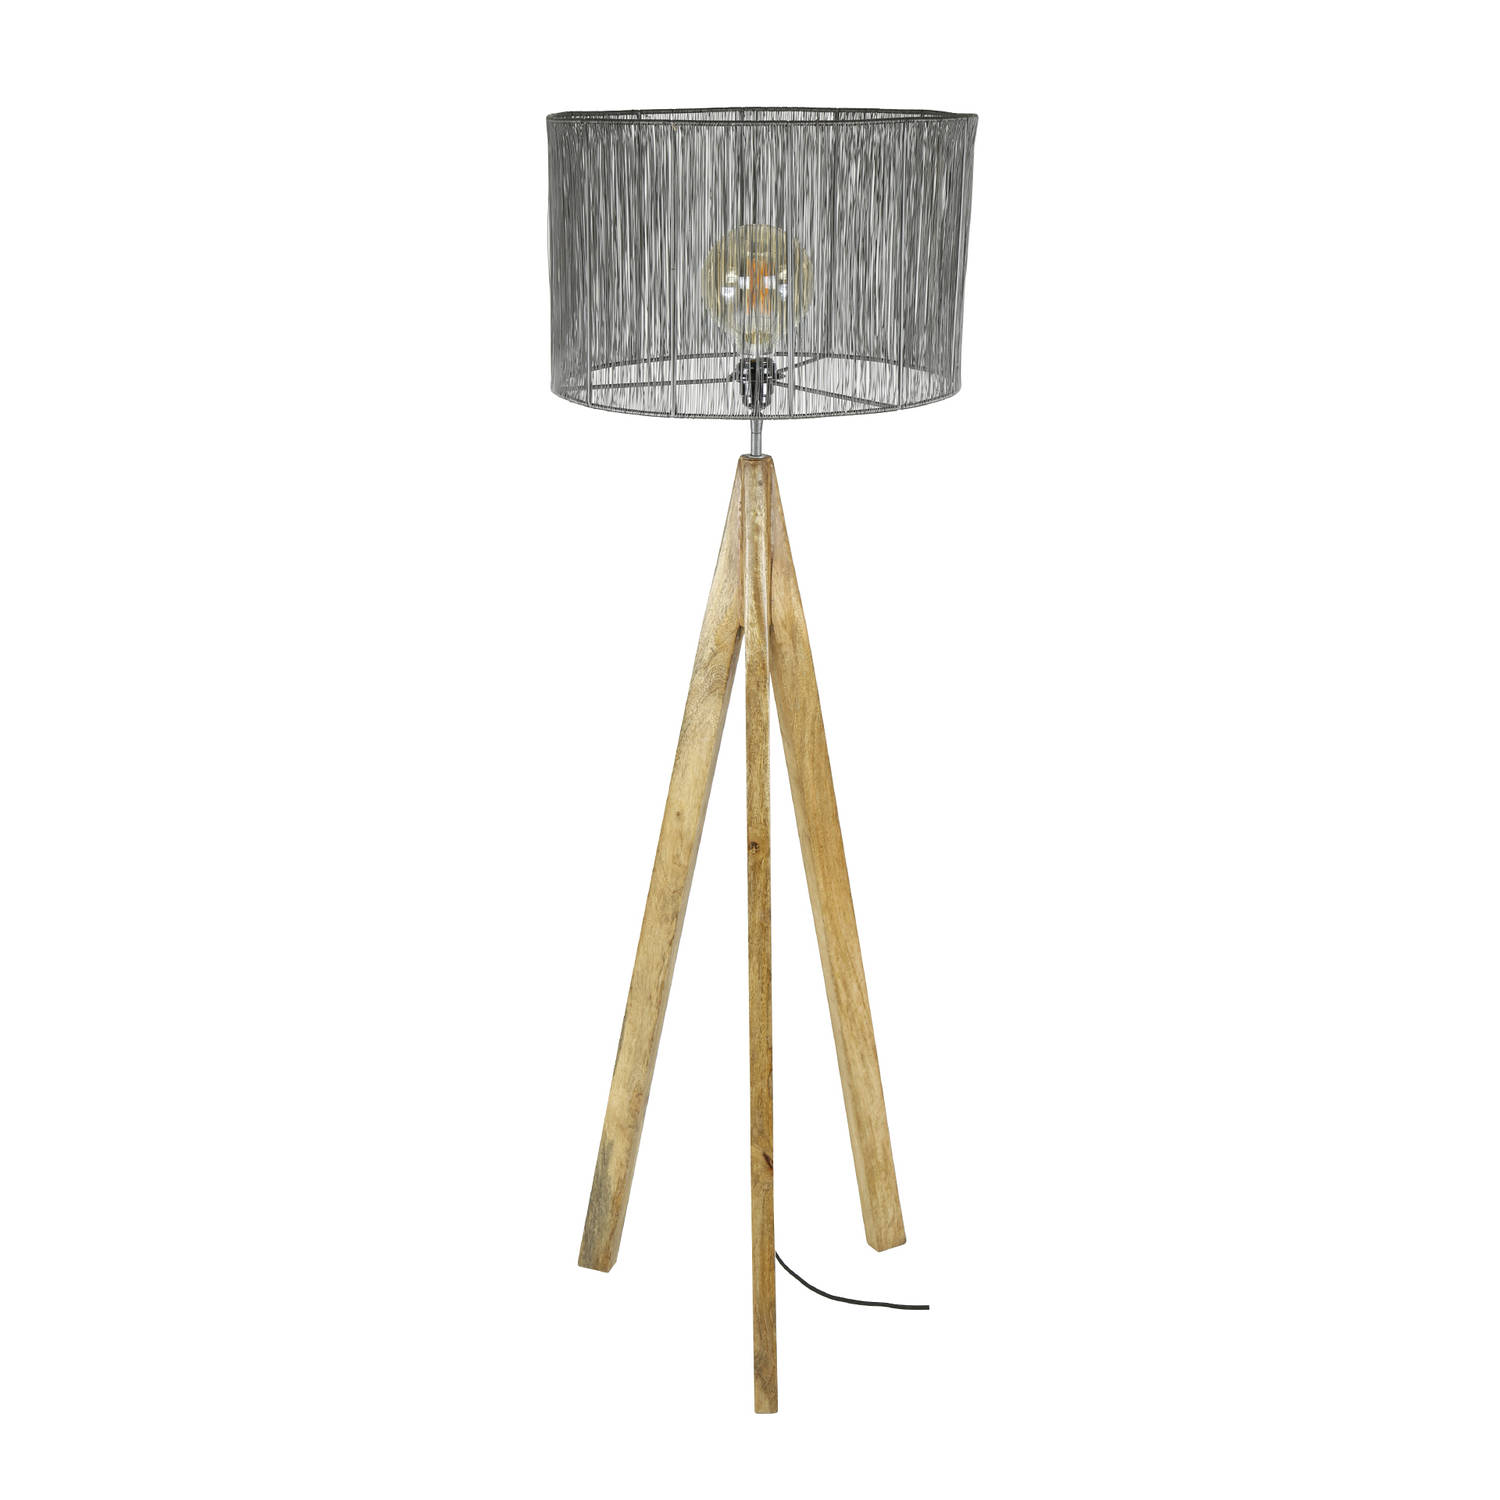 Giga Meubel Gm Vloerlamp Ø40cm - Hout & Metaal - Lamp Tripod Wood